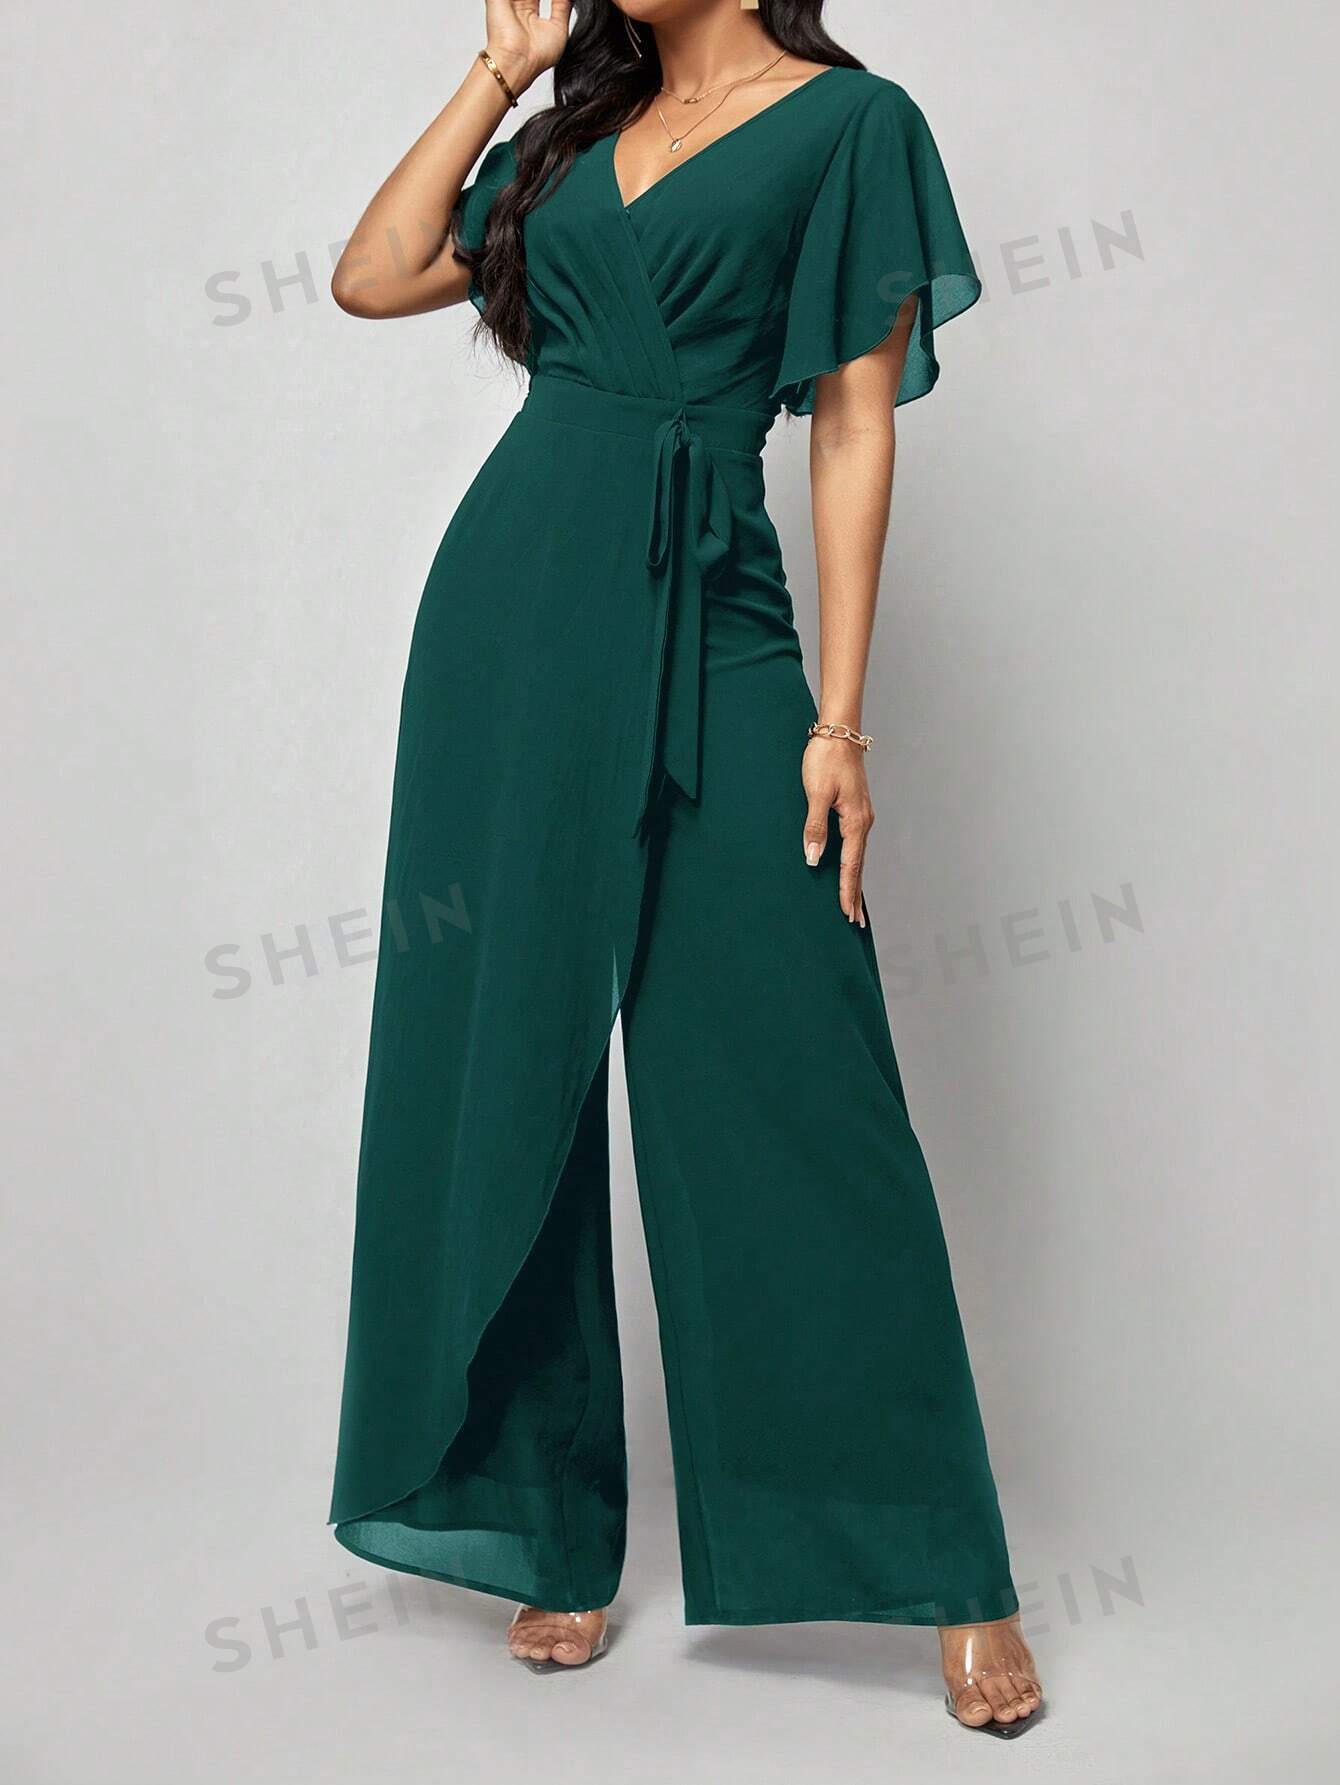 shein ezwear женский комбинезон с широкими штанинами и изогнутым вырезом черный SHEIN Clasi Женский однотонный плиссированный комбинезон с запахом и завязывающимся поясом, темно-зеленый